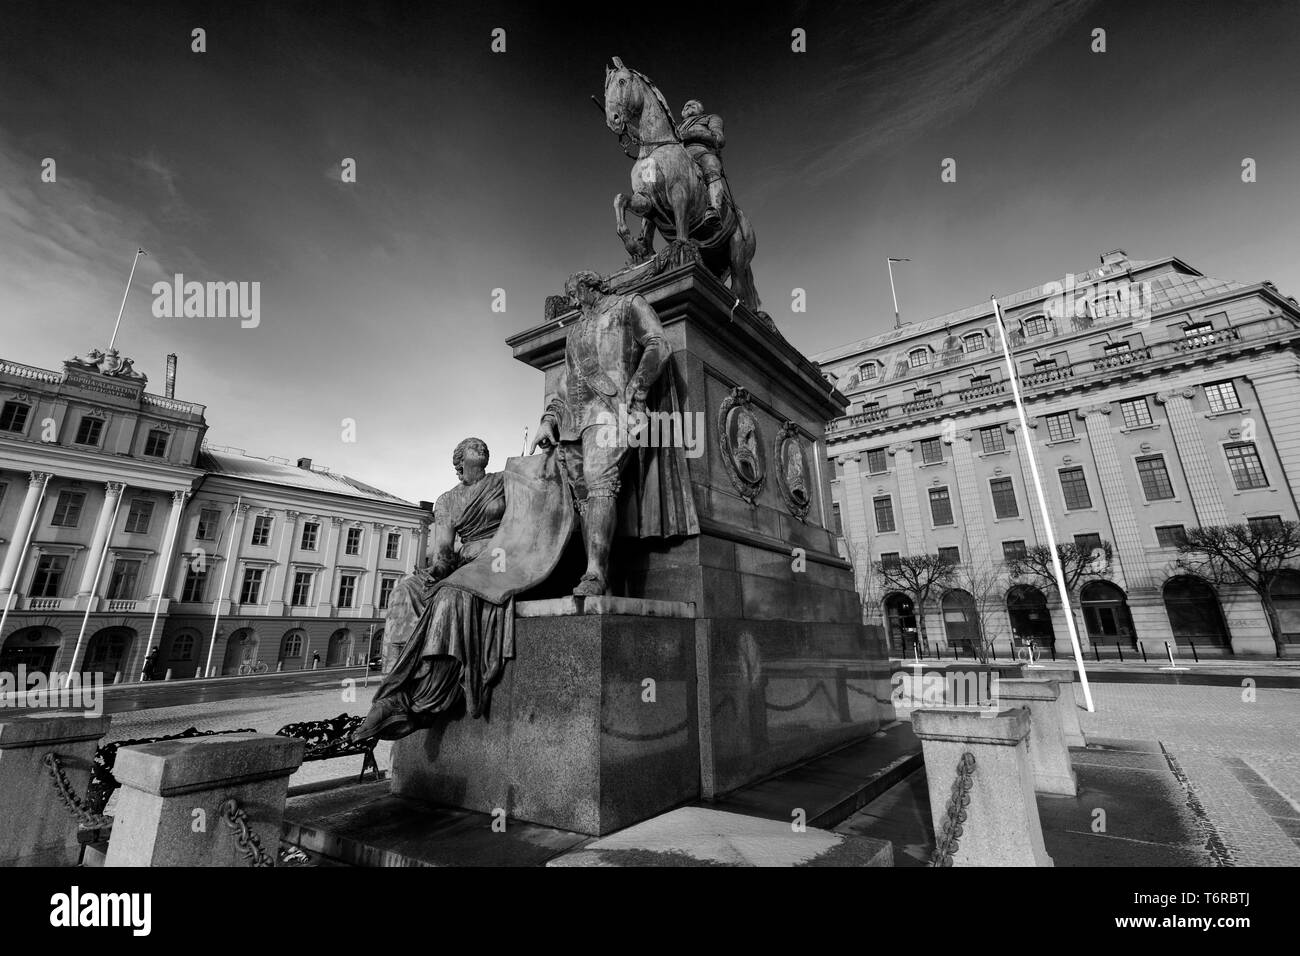 Reiterstandbild von Gustolf II Adolf, Gustav Adolf Platz, die Stadt Stockholm, Schweden, Europa Stockfoto